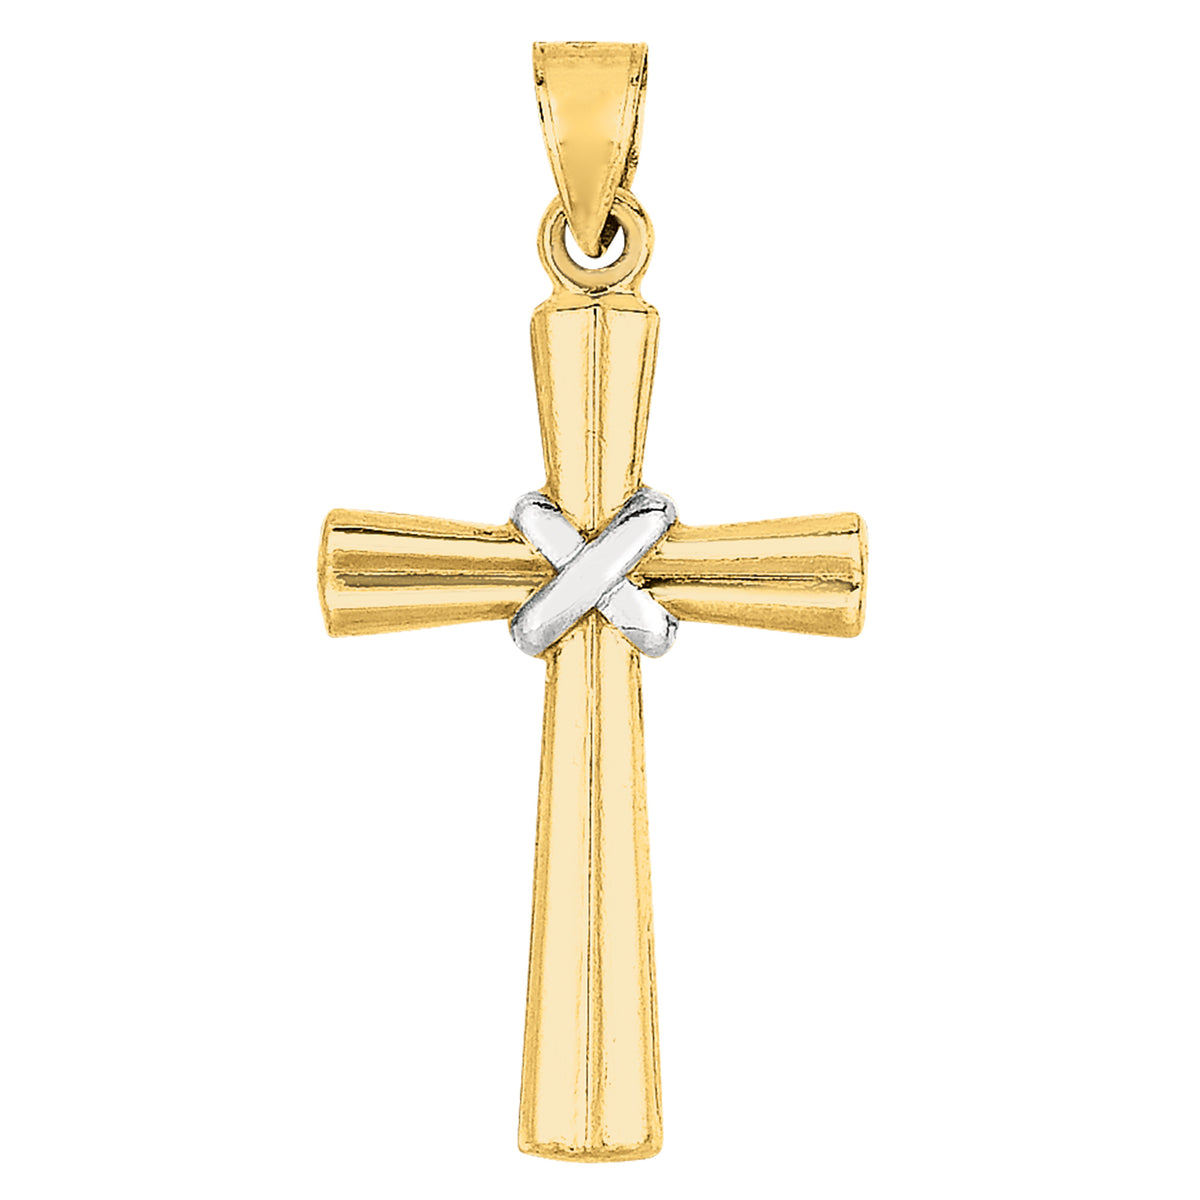 Ciondolo croce con finitura lucida in oro bicolore 14k, gioielli di design per uomini e donne